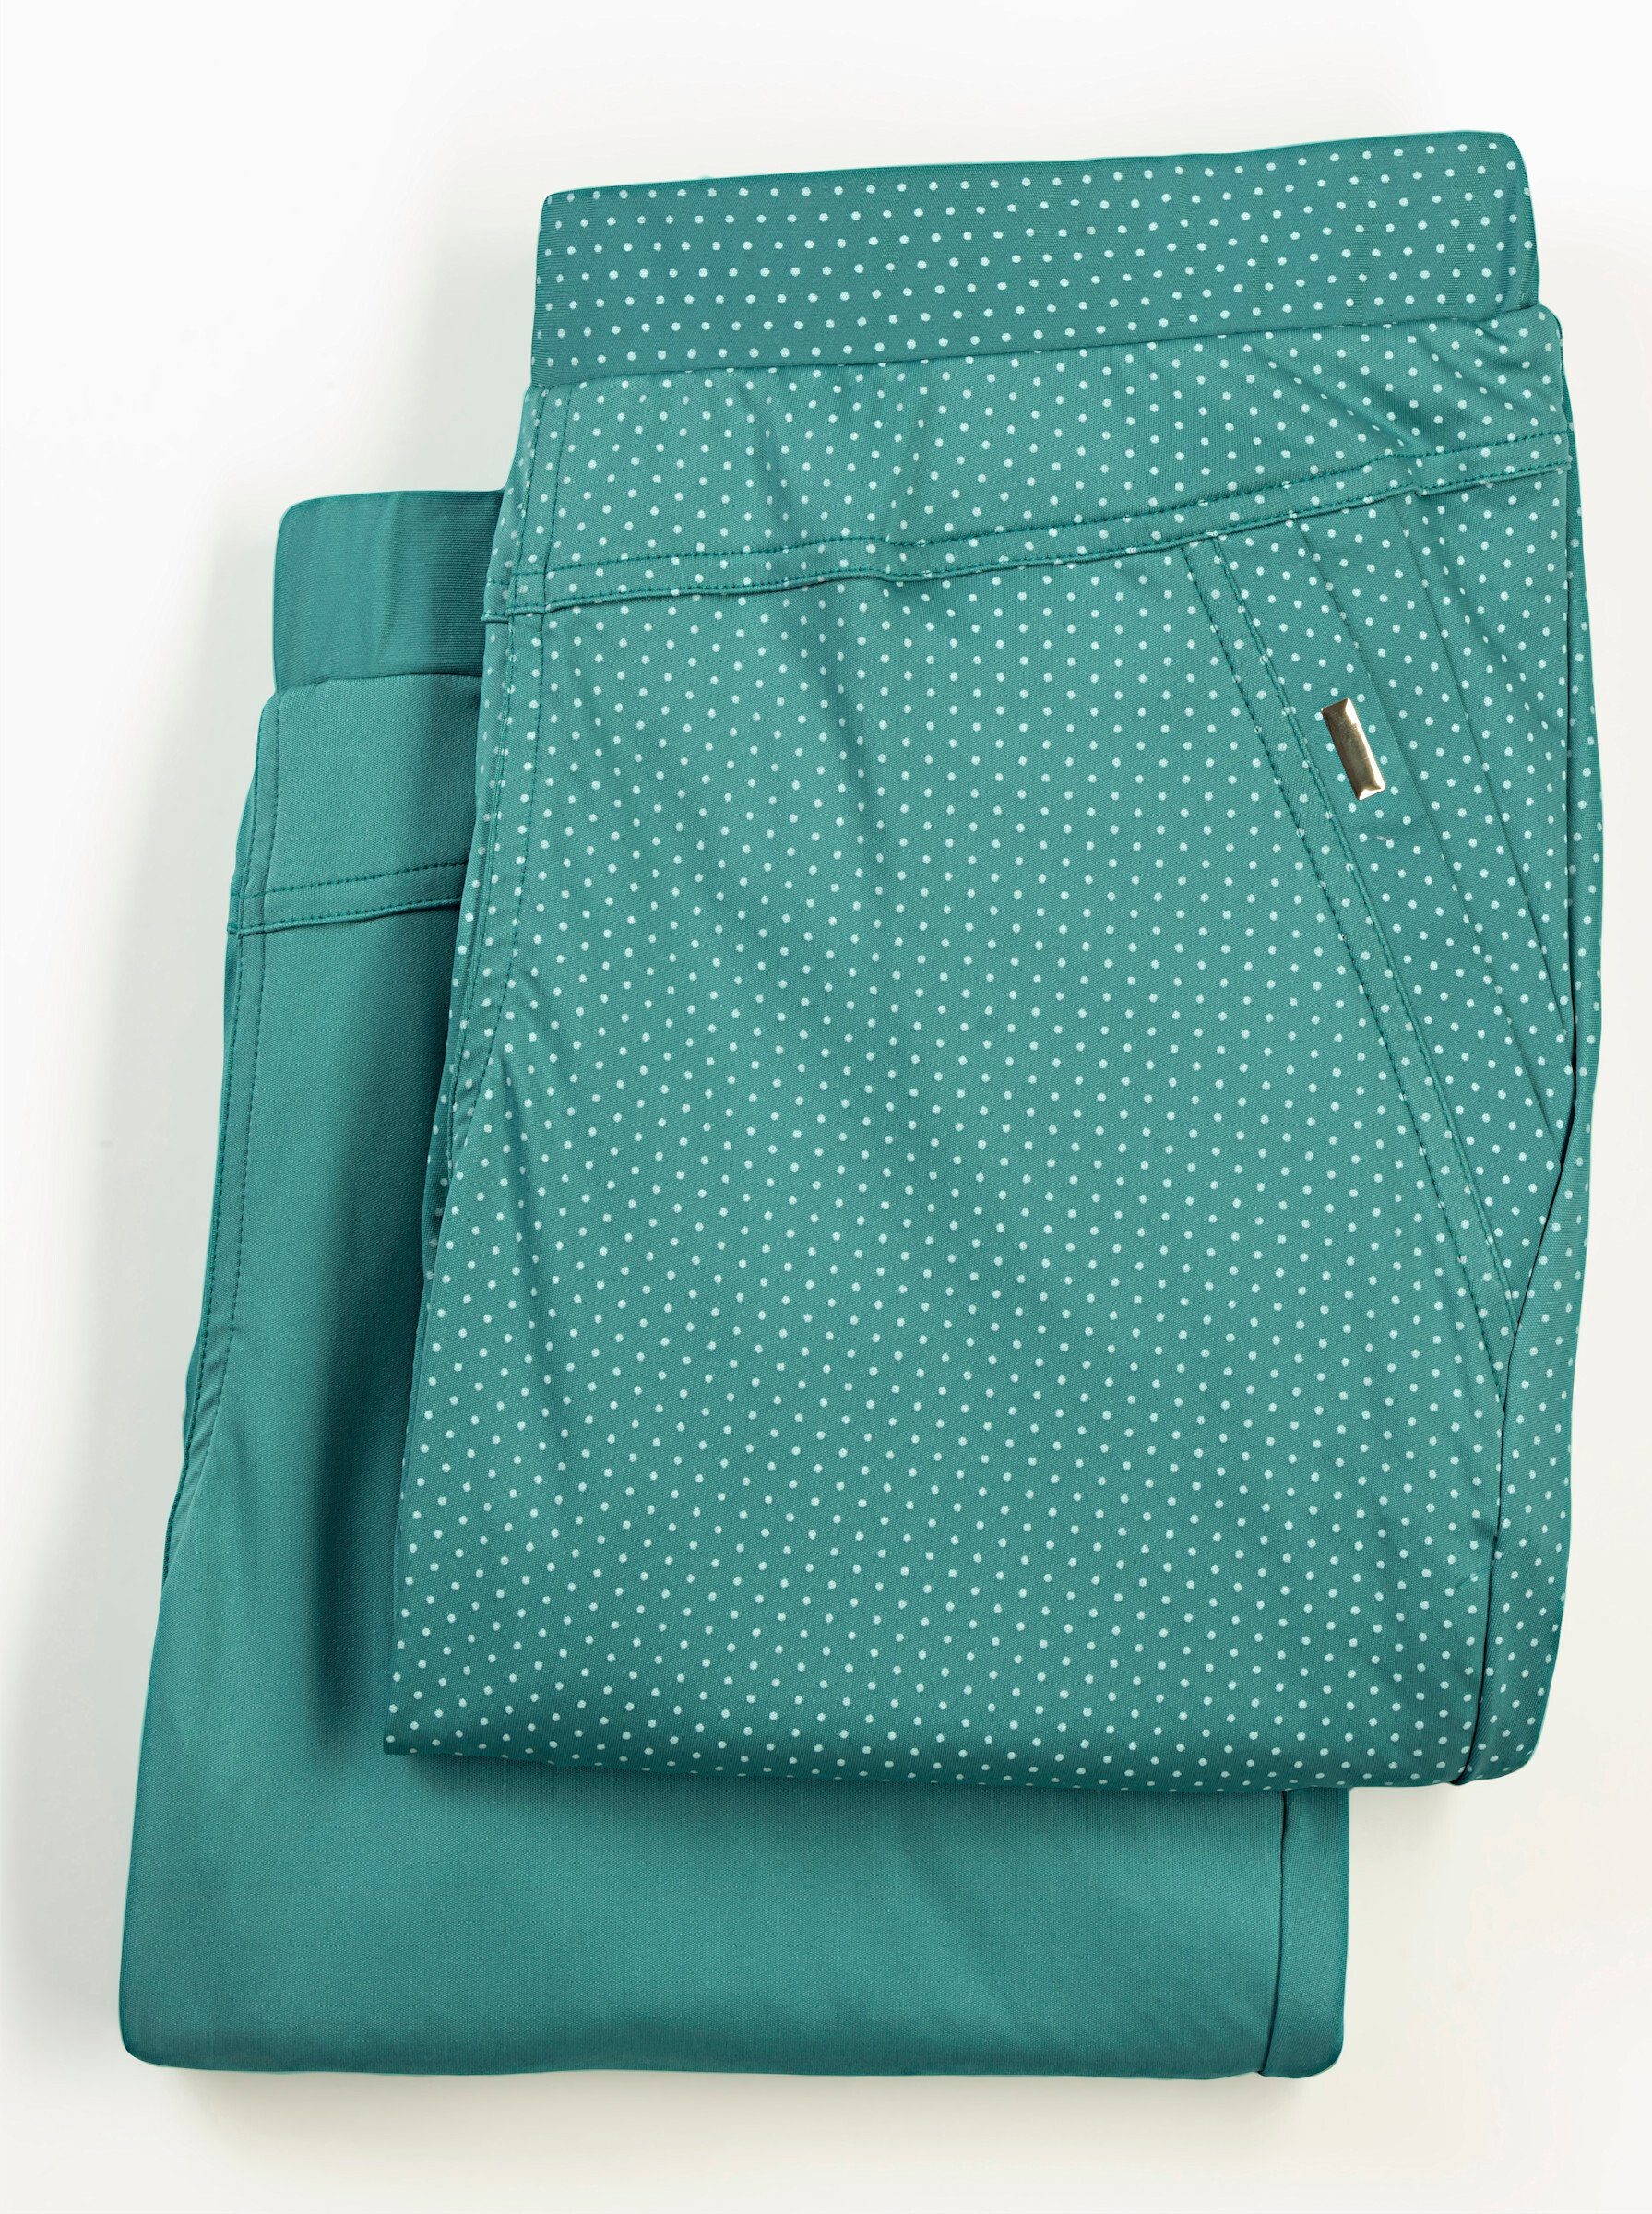 smaragd Shorts WEIDEN + smaragd-getupft WITT